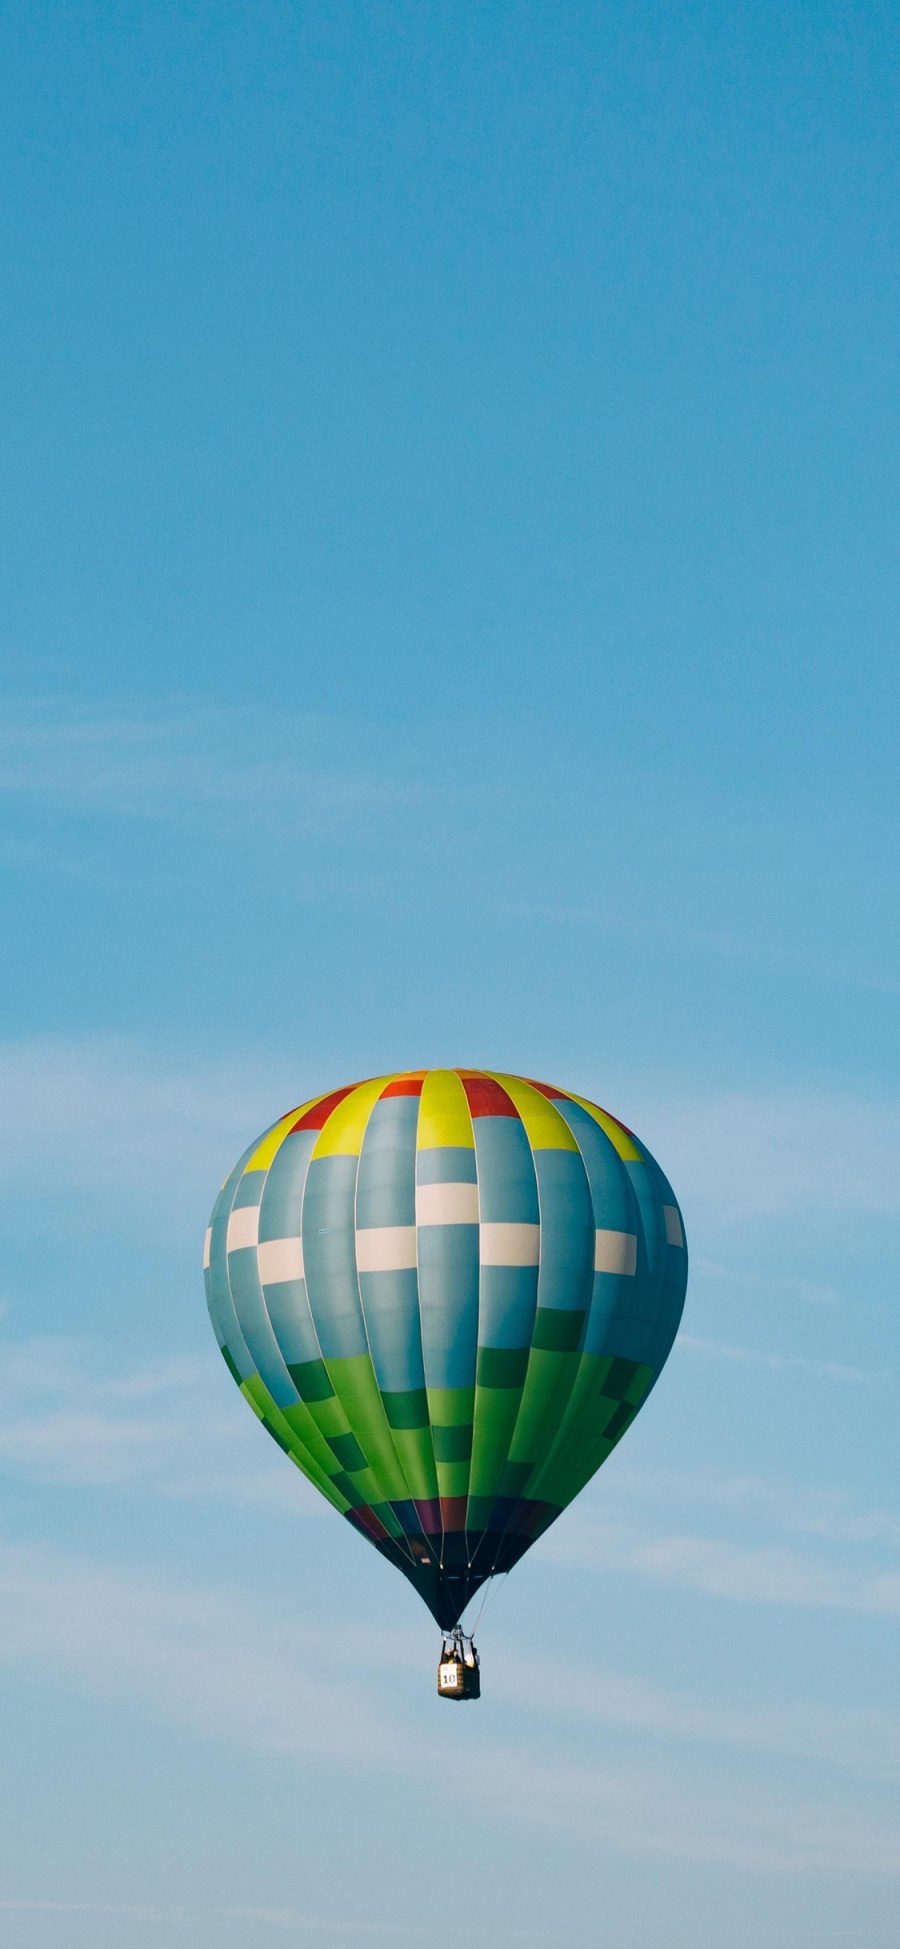 [2436×1125]热气球 飞行 天空 蓝色 苹果手机壁纸图片